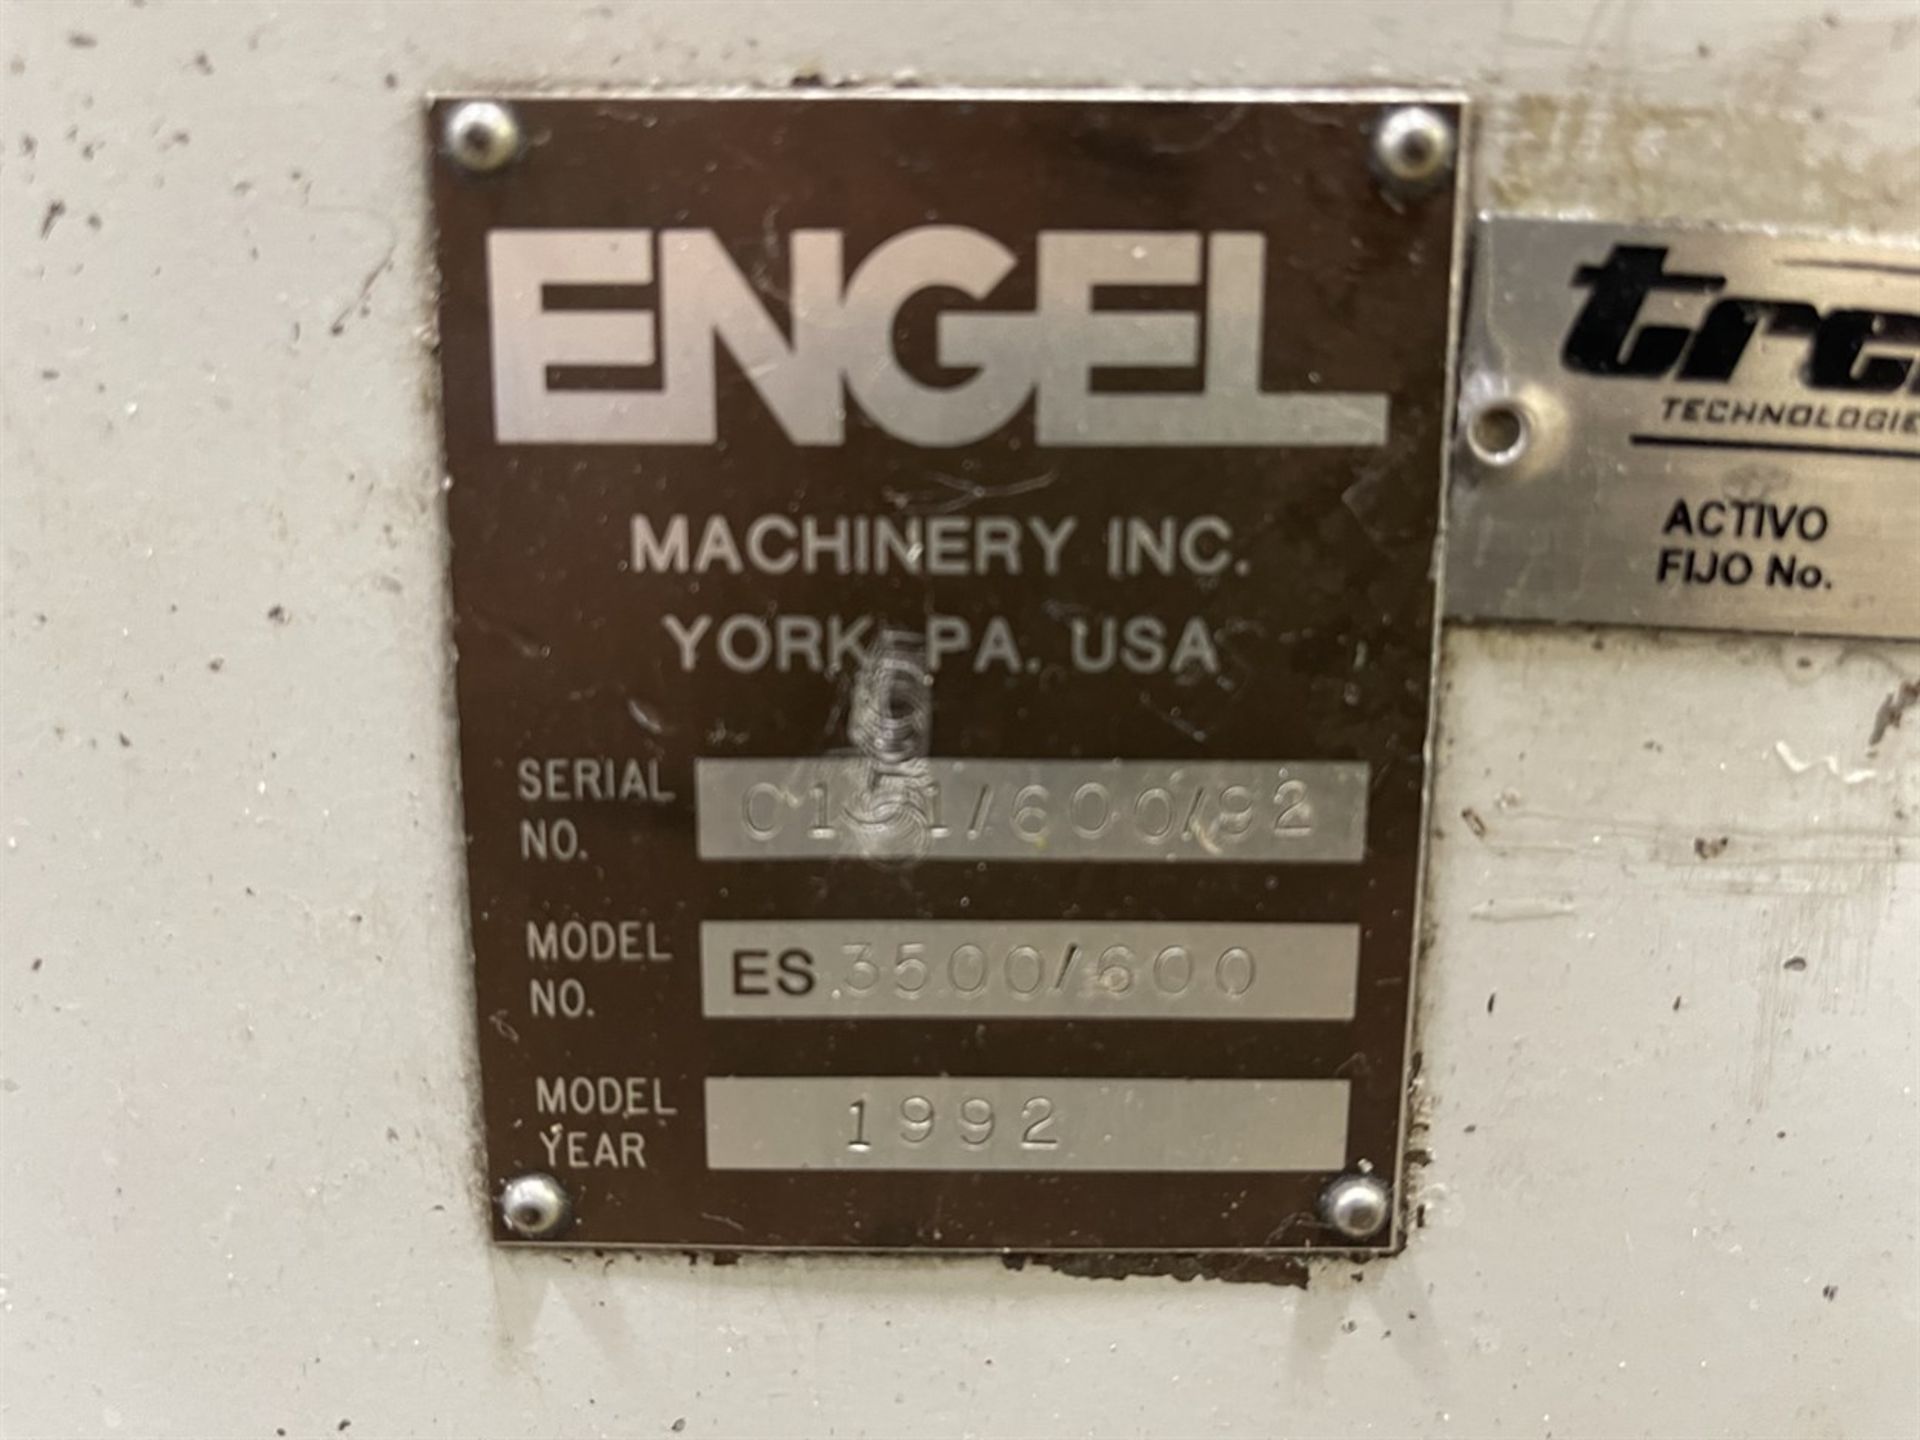 600 Ton ENGEL ES 3500-600 Hydraulic Injection Molder, s/n 0151/600/92, w/ CC90-A02 Control, 80.5 oz. - Image 11 of 12